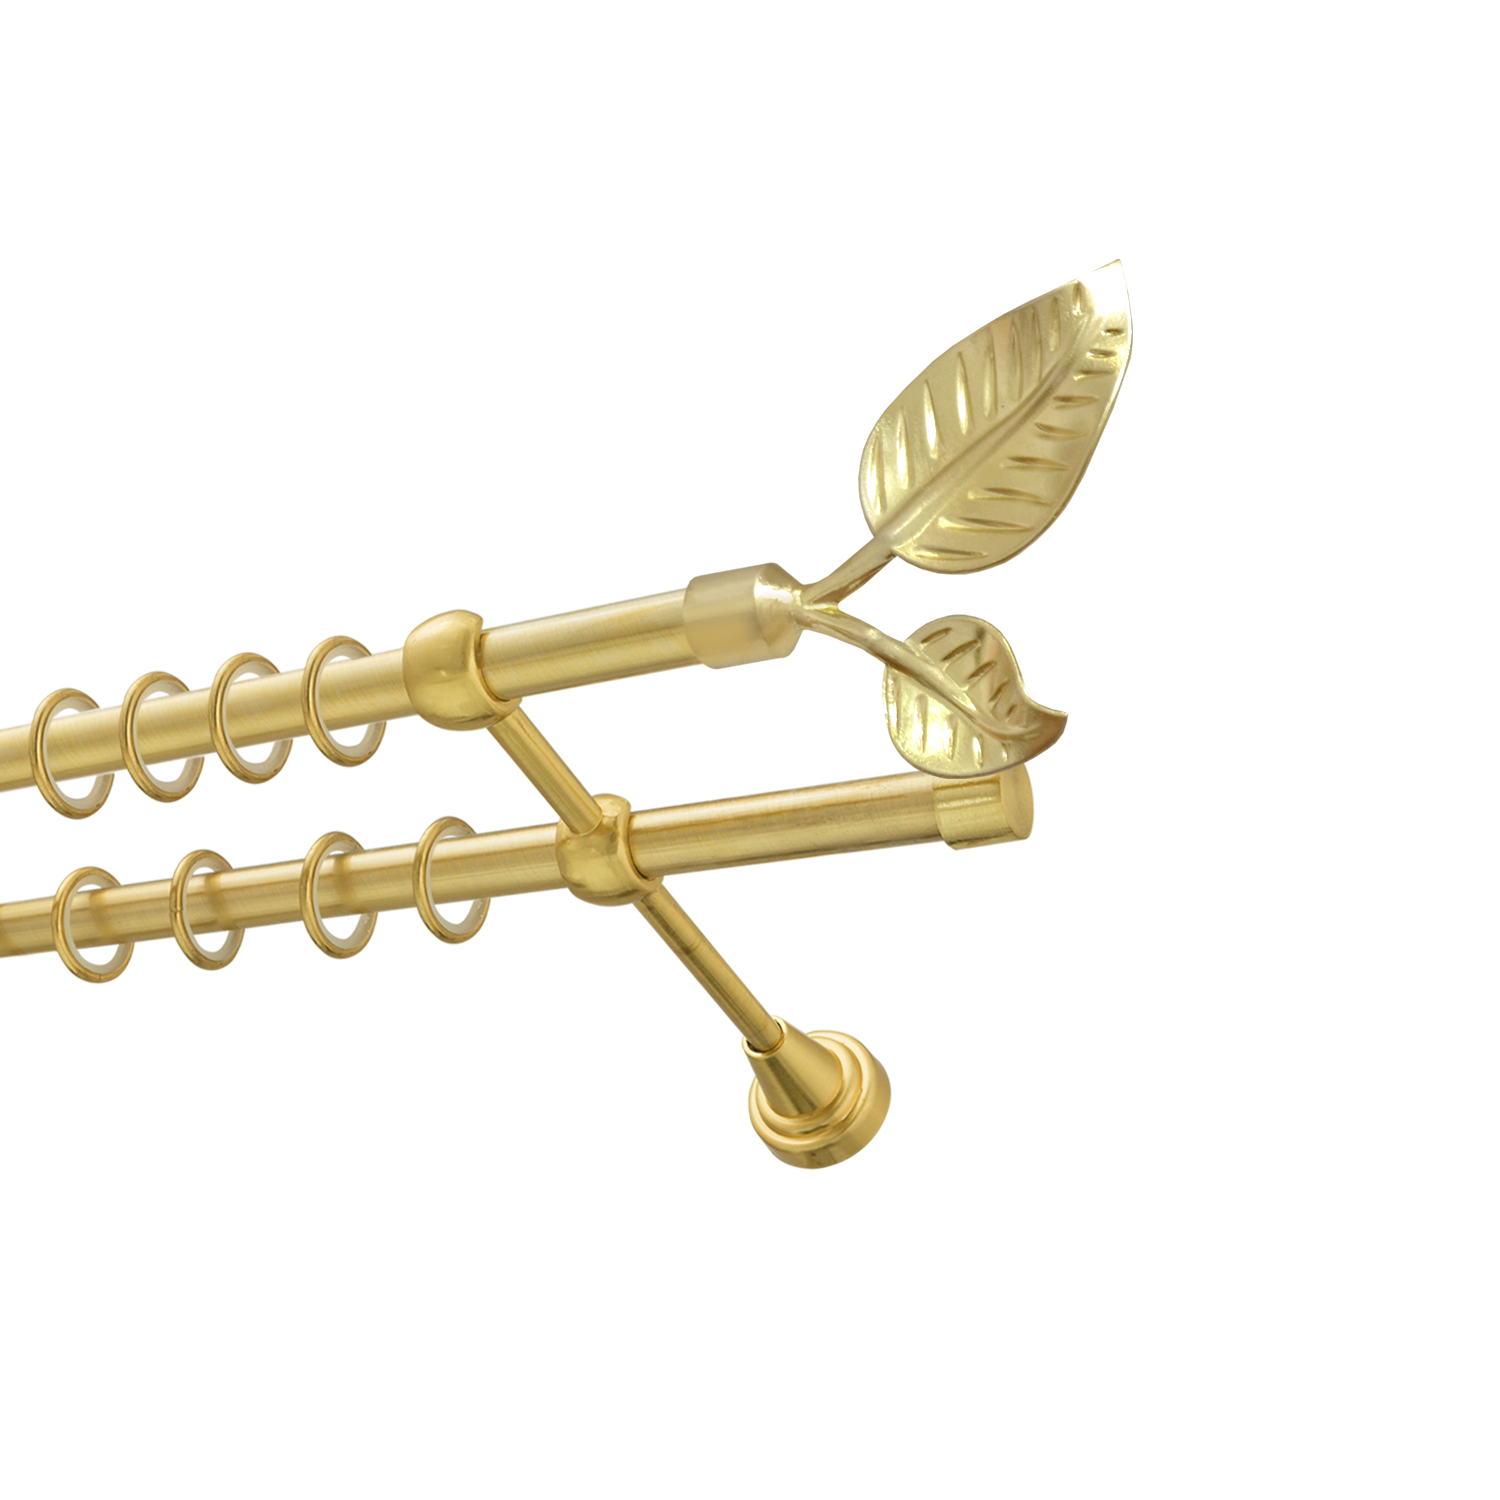 Металлический карниз для штор Тропик, двухрядный 16/16 мм, золото, гладкая штанга, длина 300 см - фото Wikidecor.ru